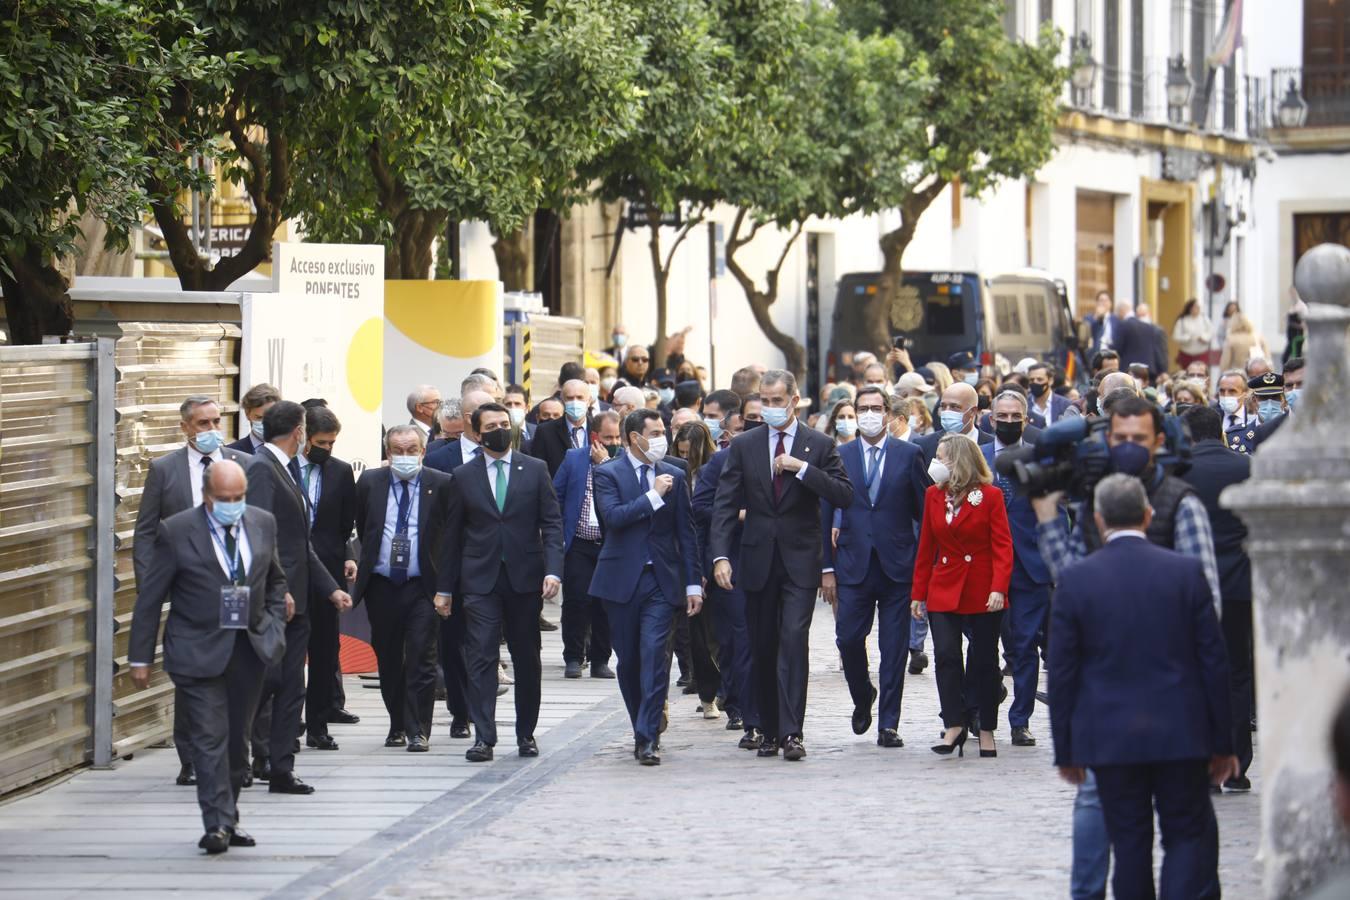 El Rey clausura el Congreso CEDE en Córdoba, en imágenes